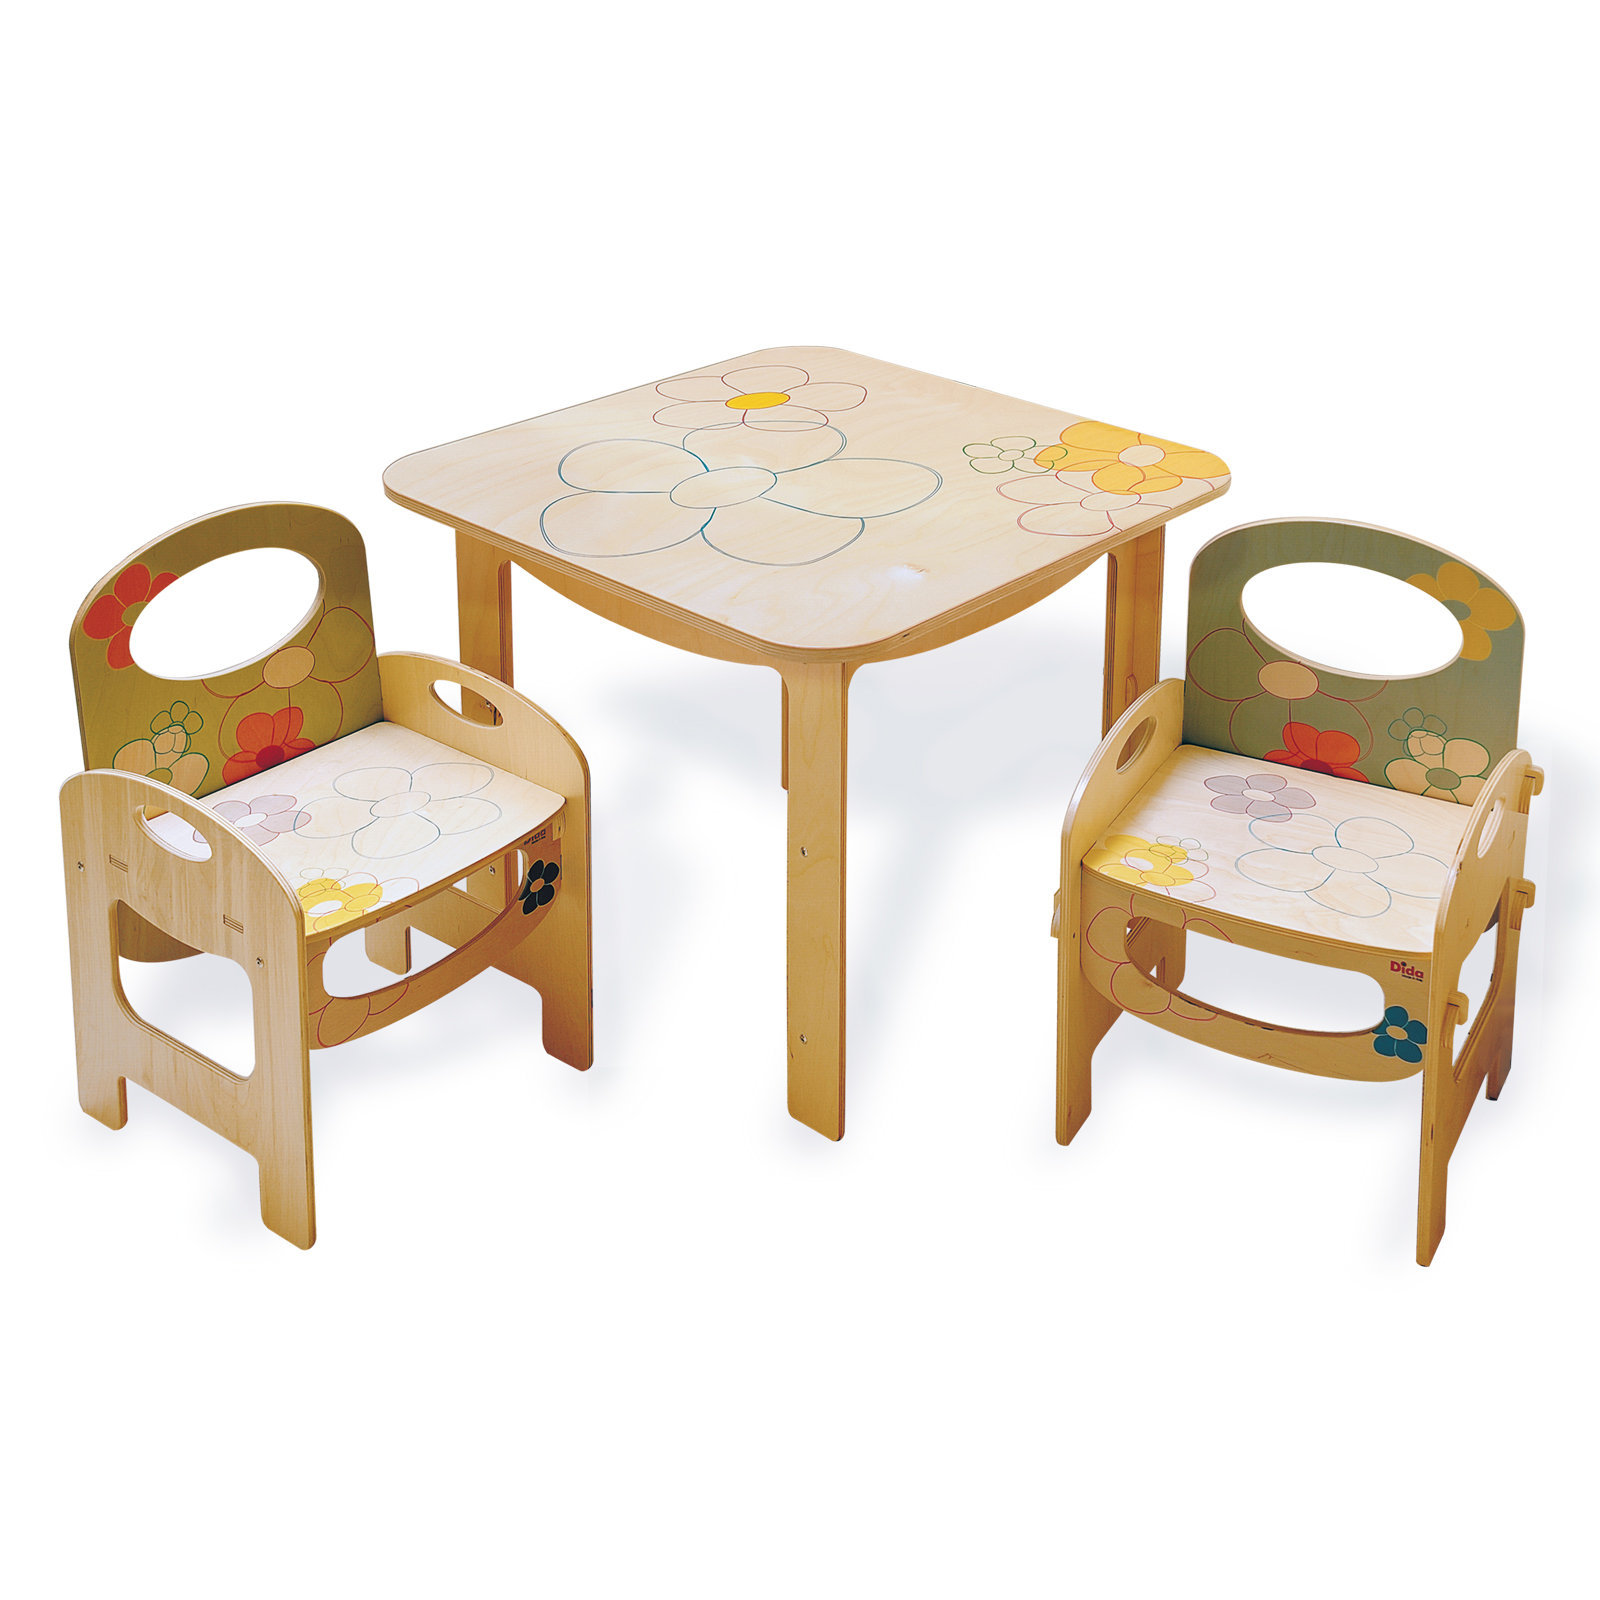 Set per bambini composto da tavolo e sedia in legno per bambini e bambini che studiano Pai 